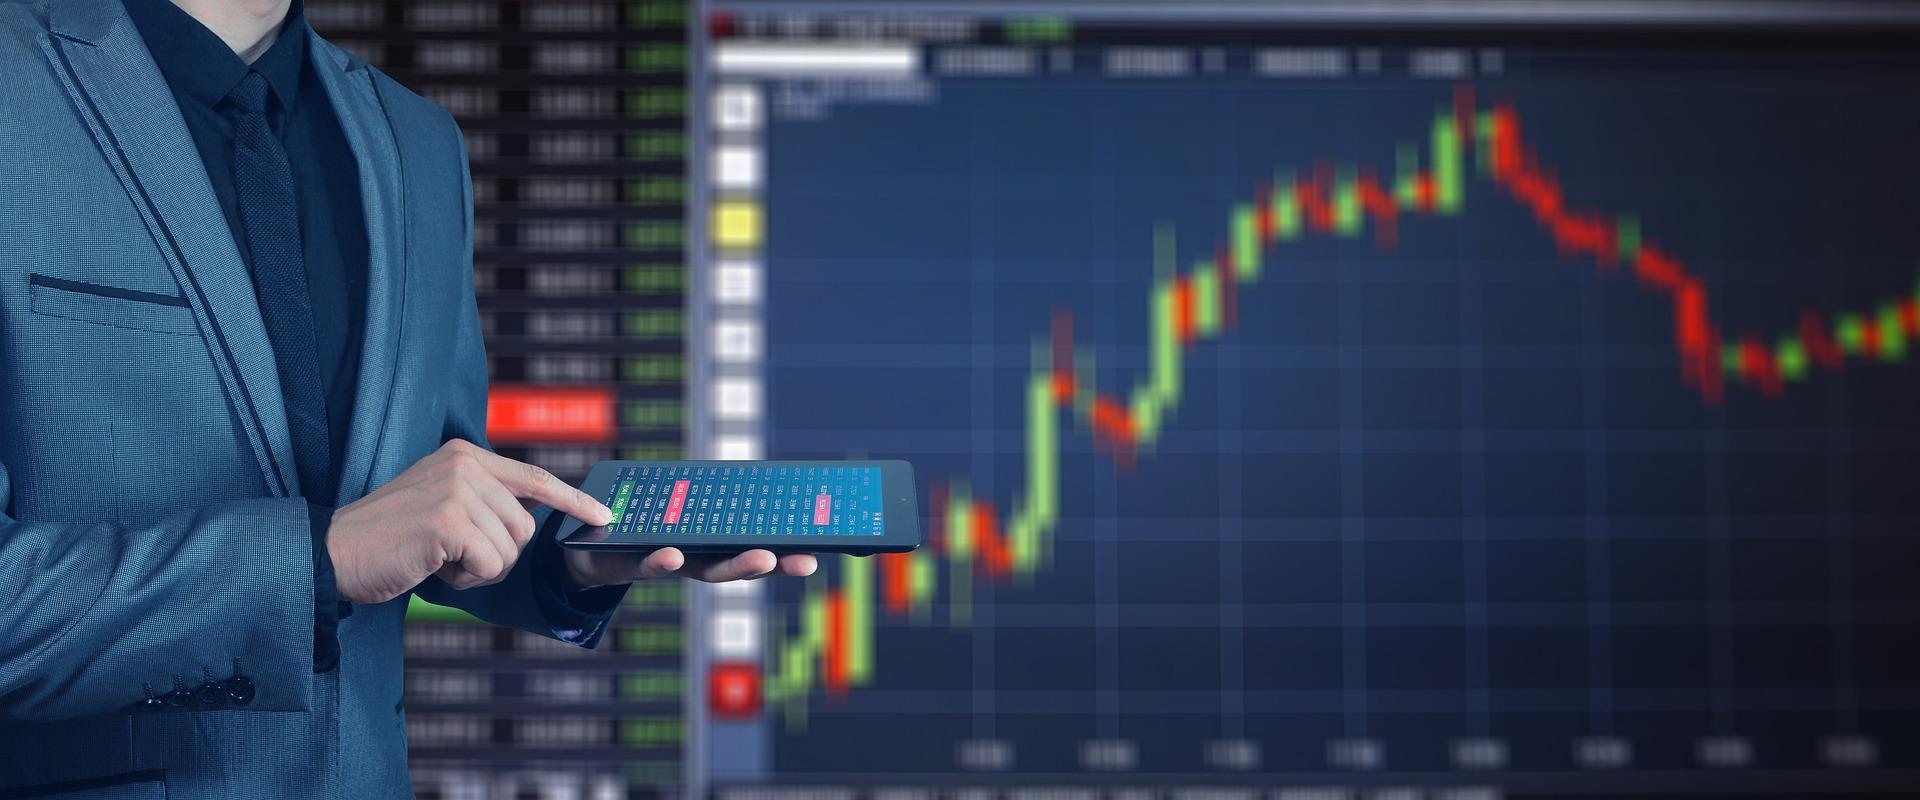 Cos'è il trading algoritmico?